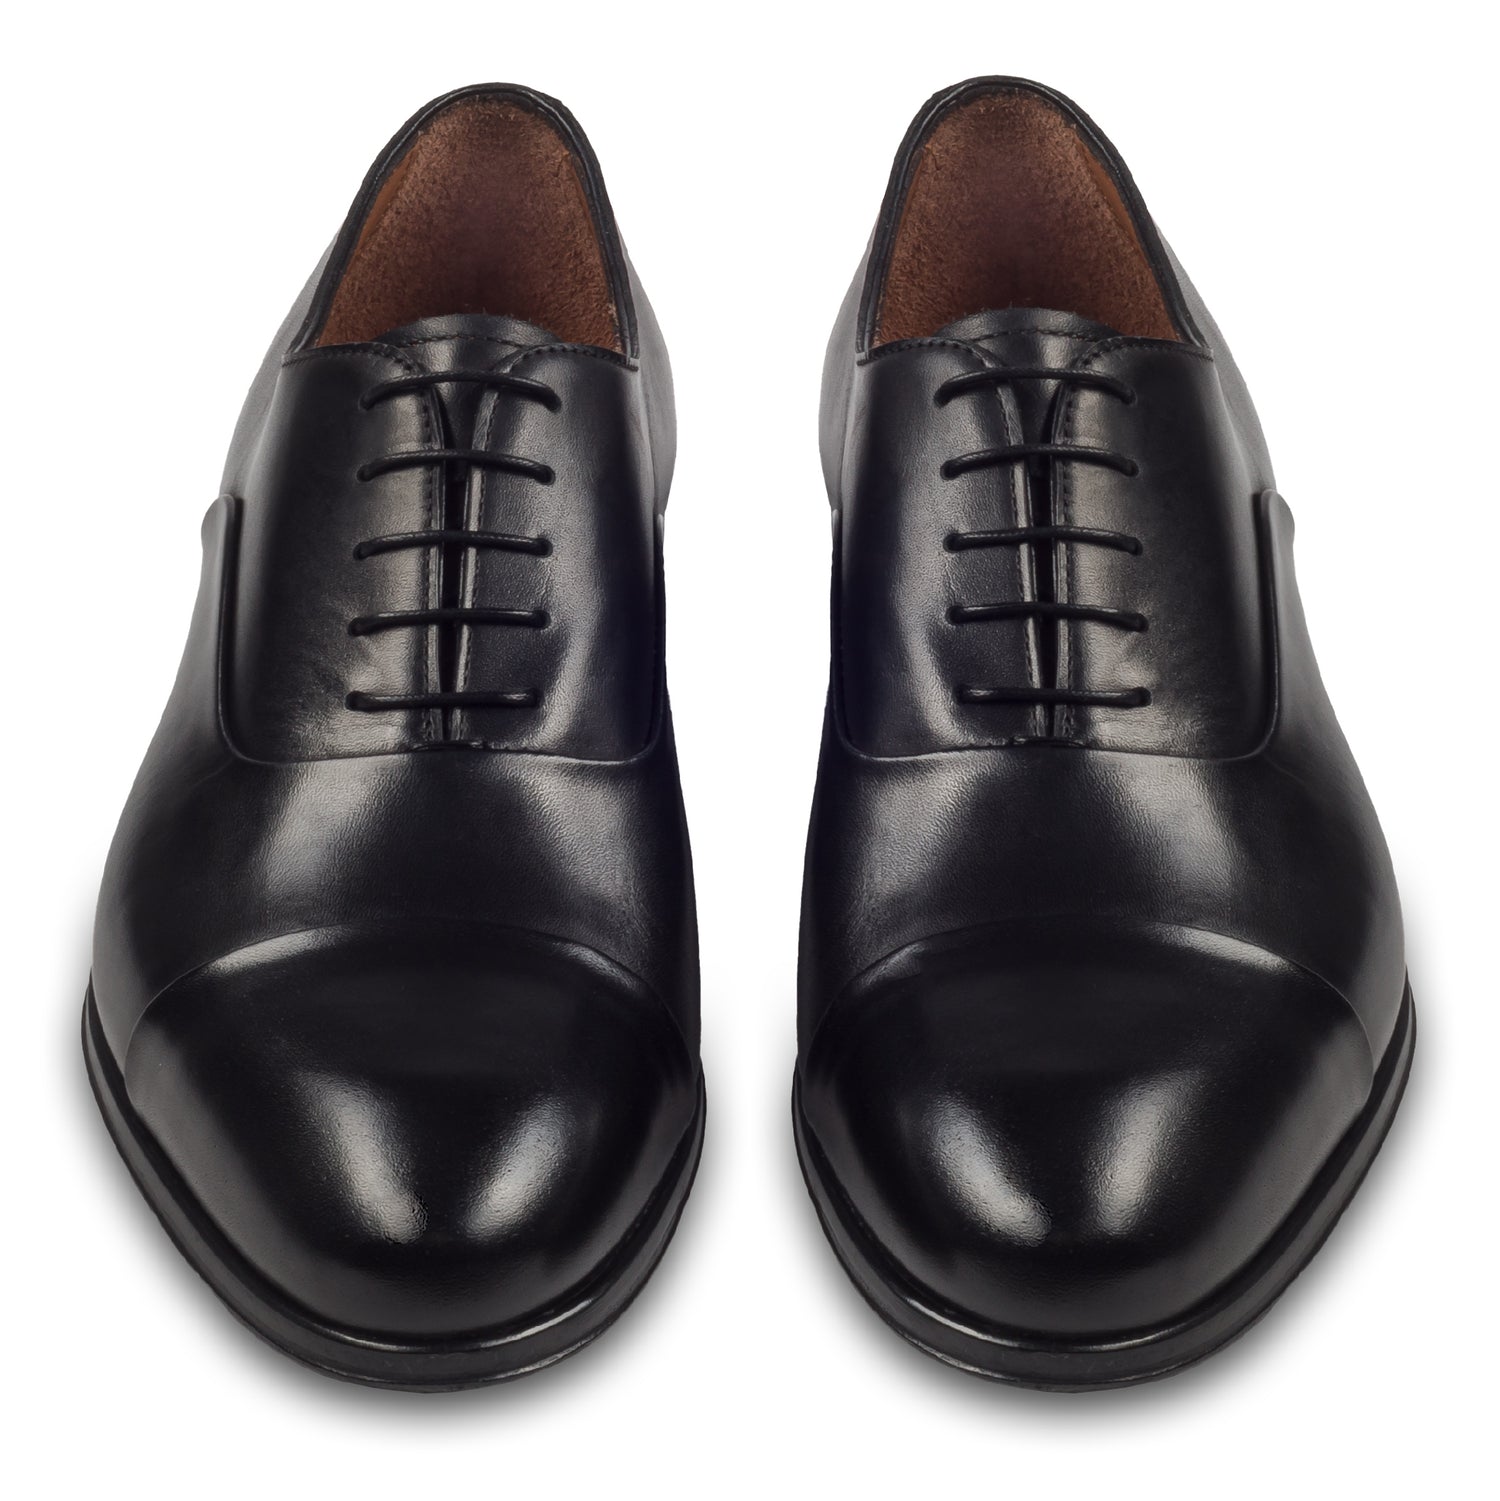 FLECS | Anzugschuh Oxford Captoe in schwarz von FLECS, durchgenäht. Paarweise Ansicht von vorne. Bei Sisento.